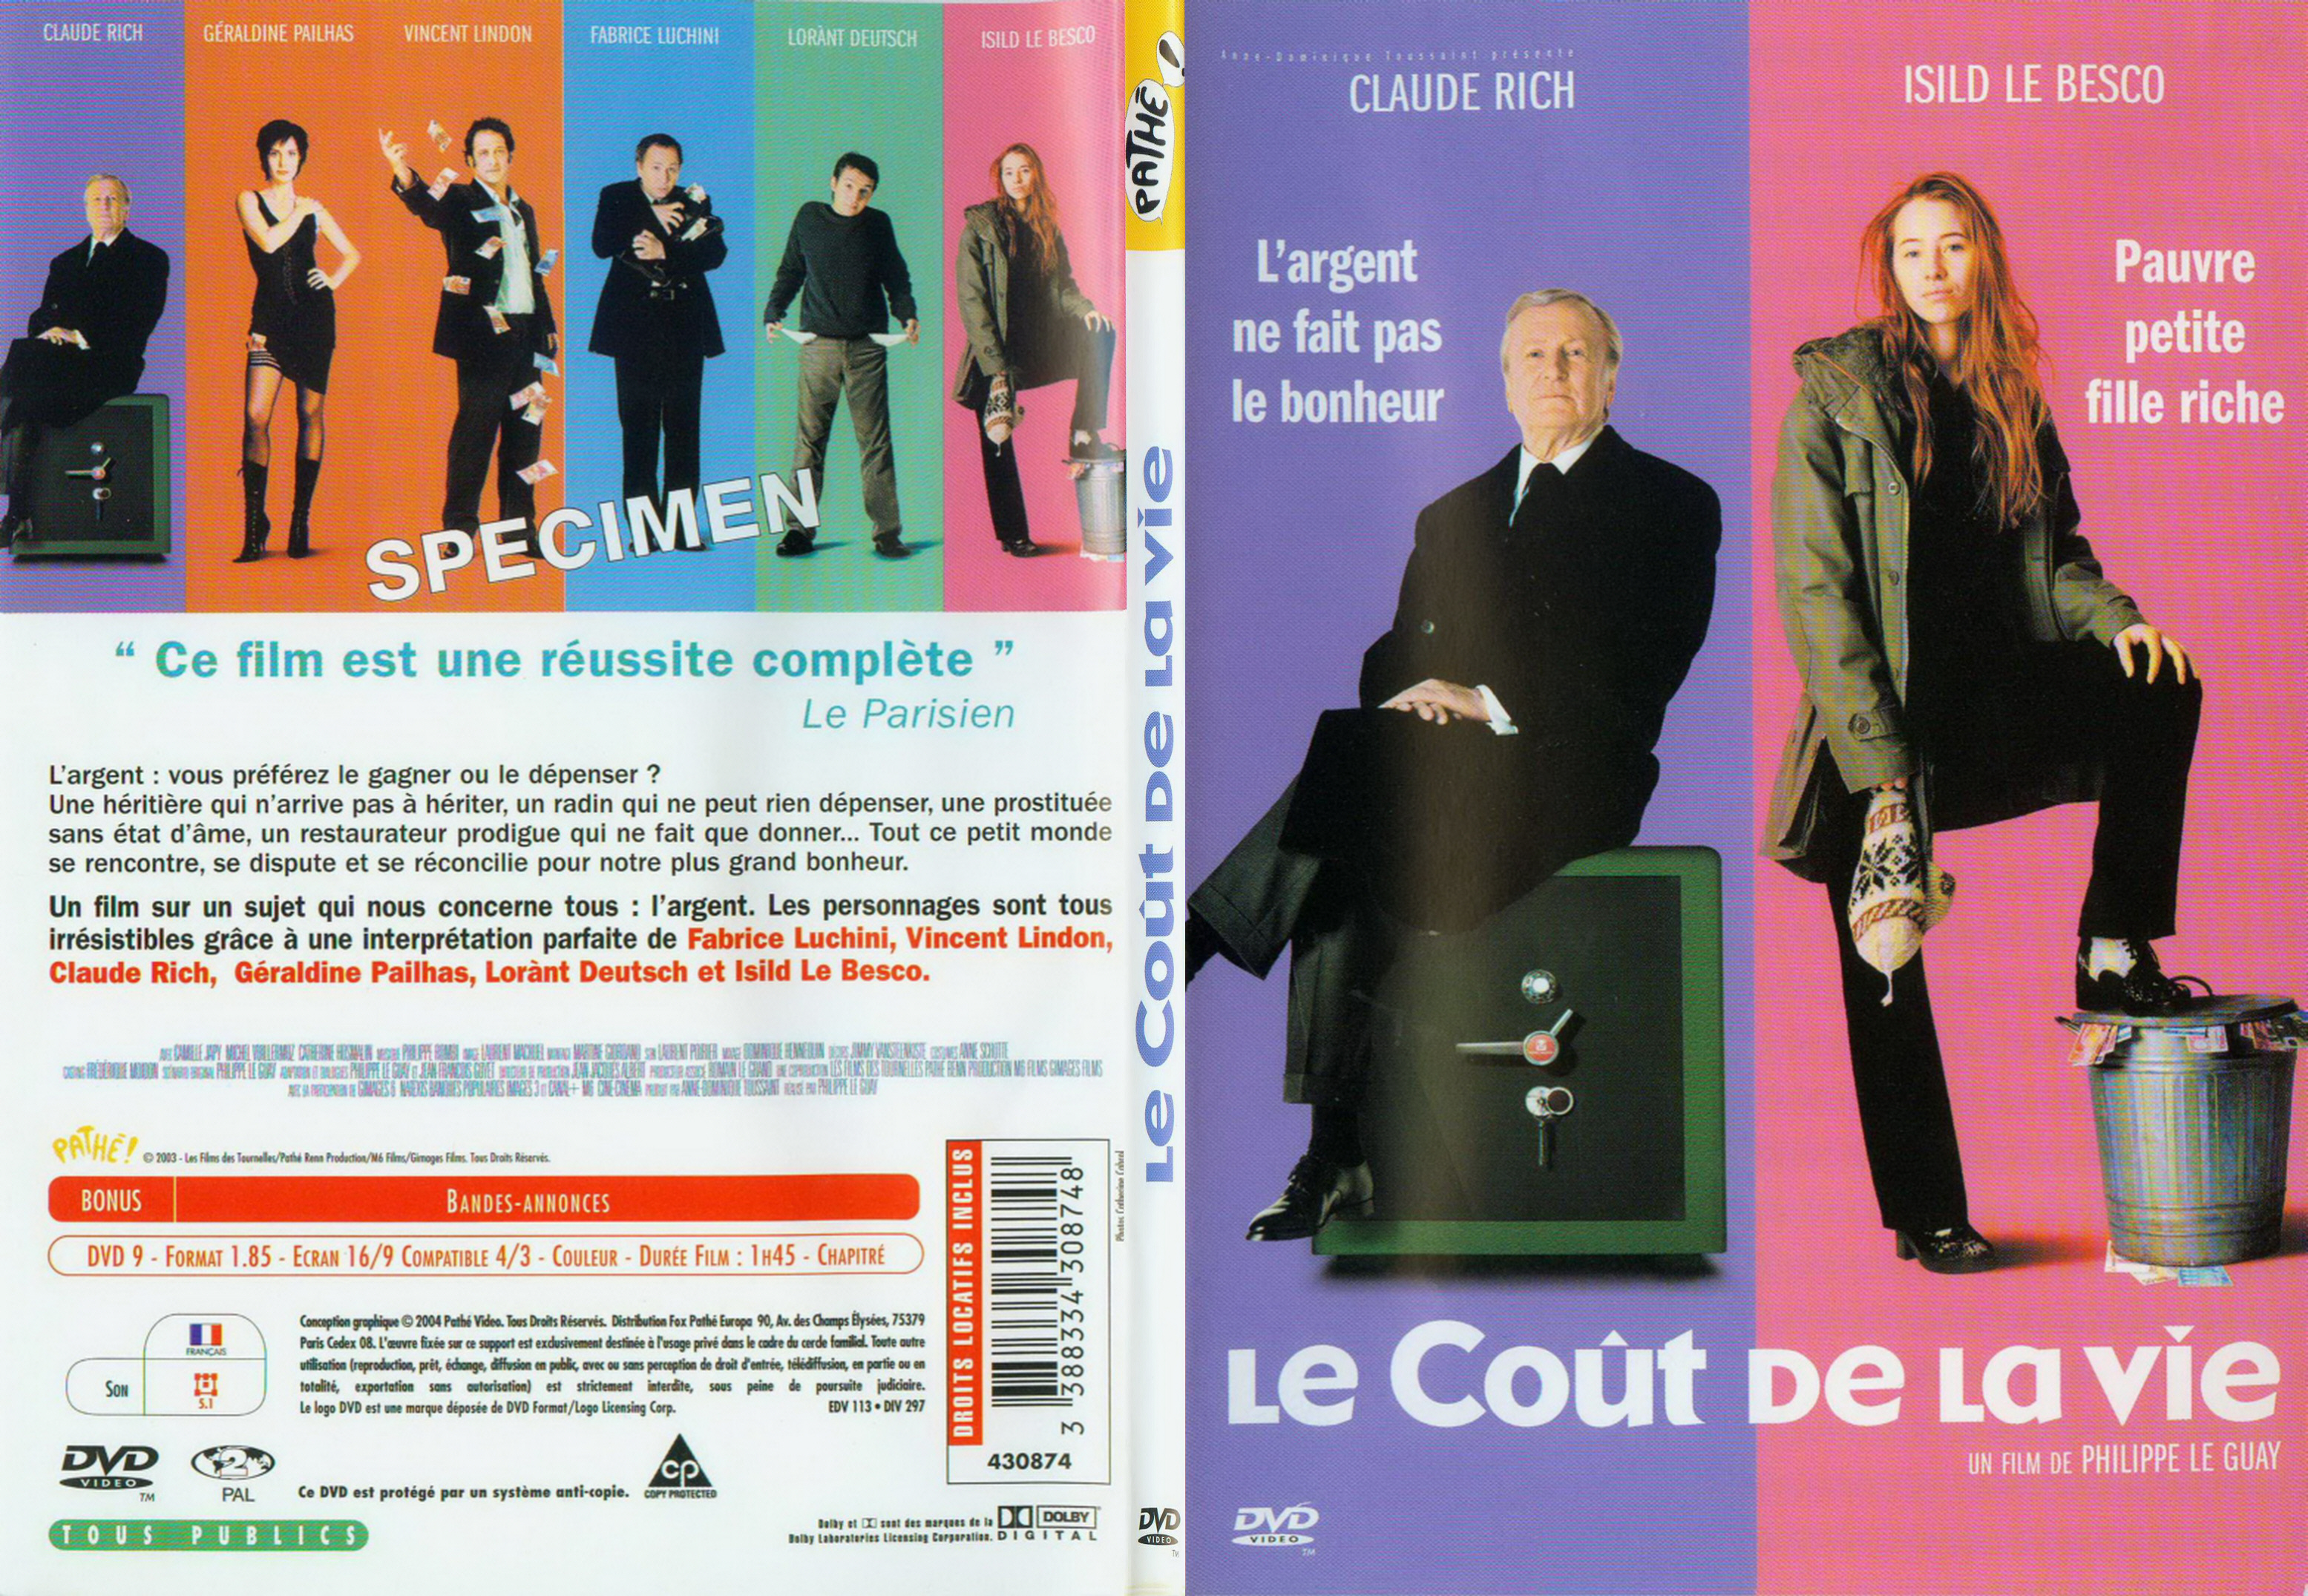 Jaquette DVD Le cout de la vie - SLIM